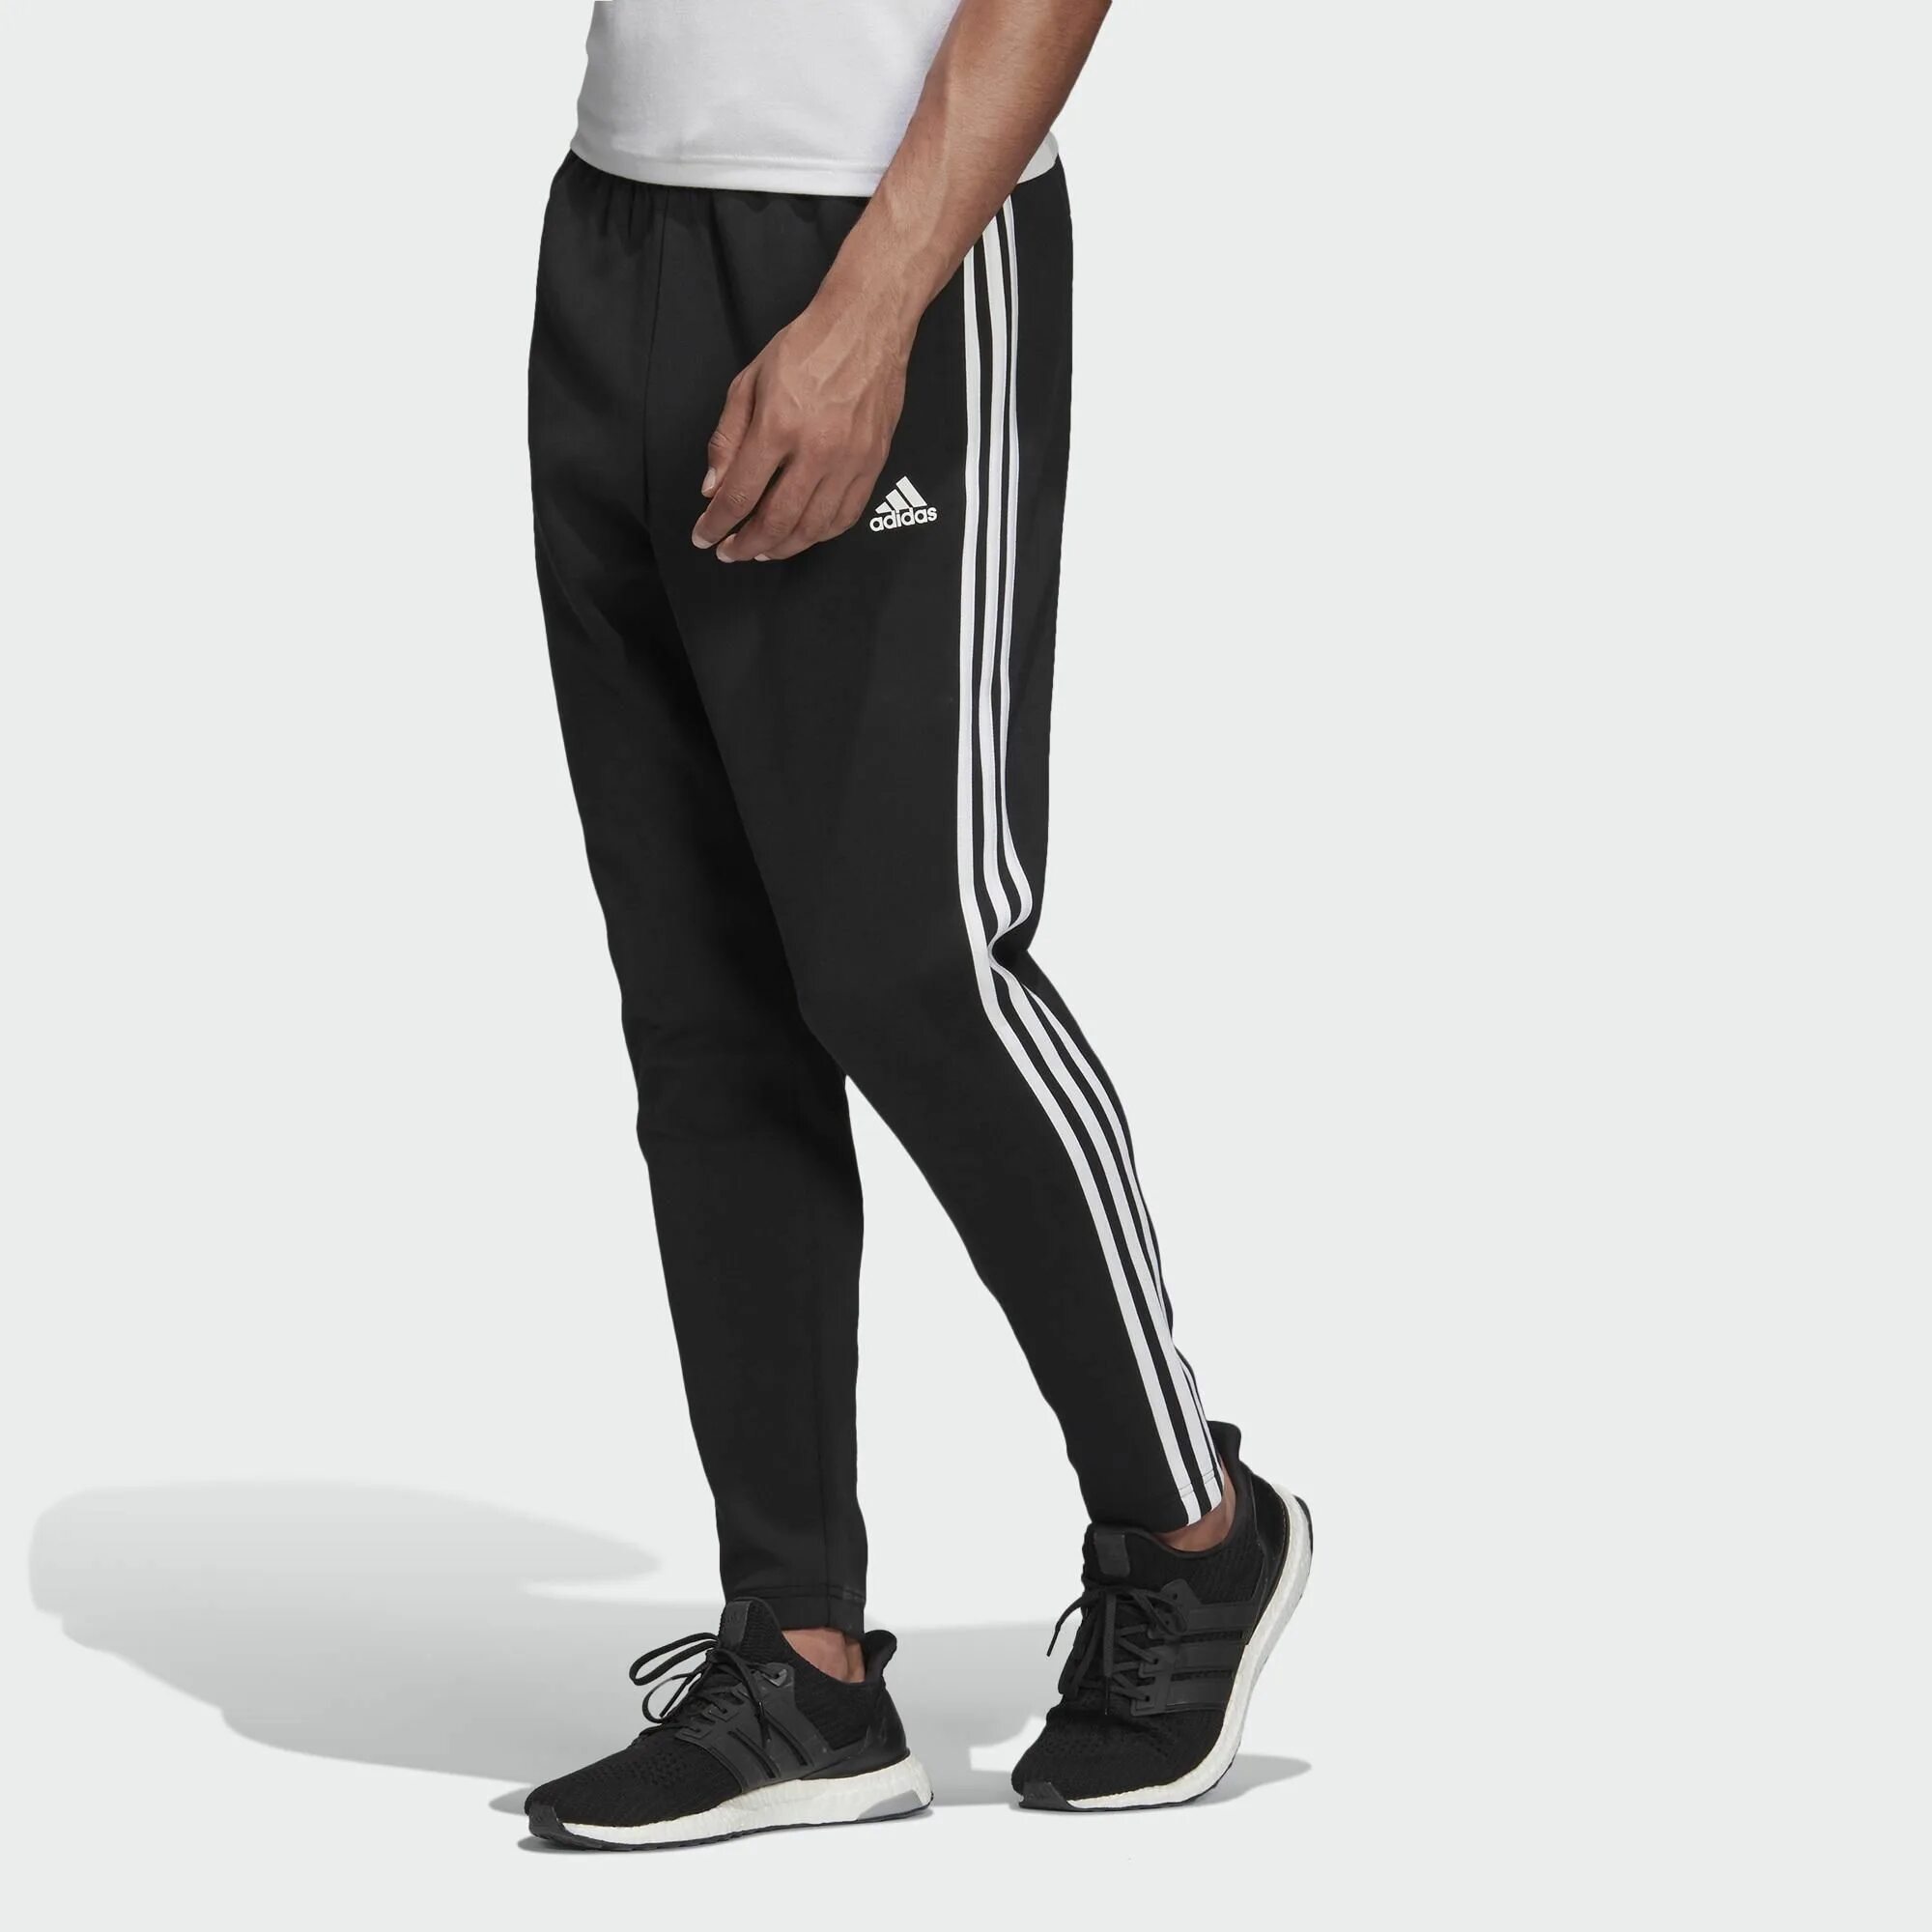 Спортивное штаны купить недорого. Adidas 3 Stripes штаны. Adidas Essentials 2013 штаны. Штаны адидас мужские черные. Adidas Originals брюки спортивные 3-Stripes Cargo.